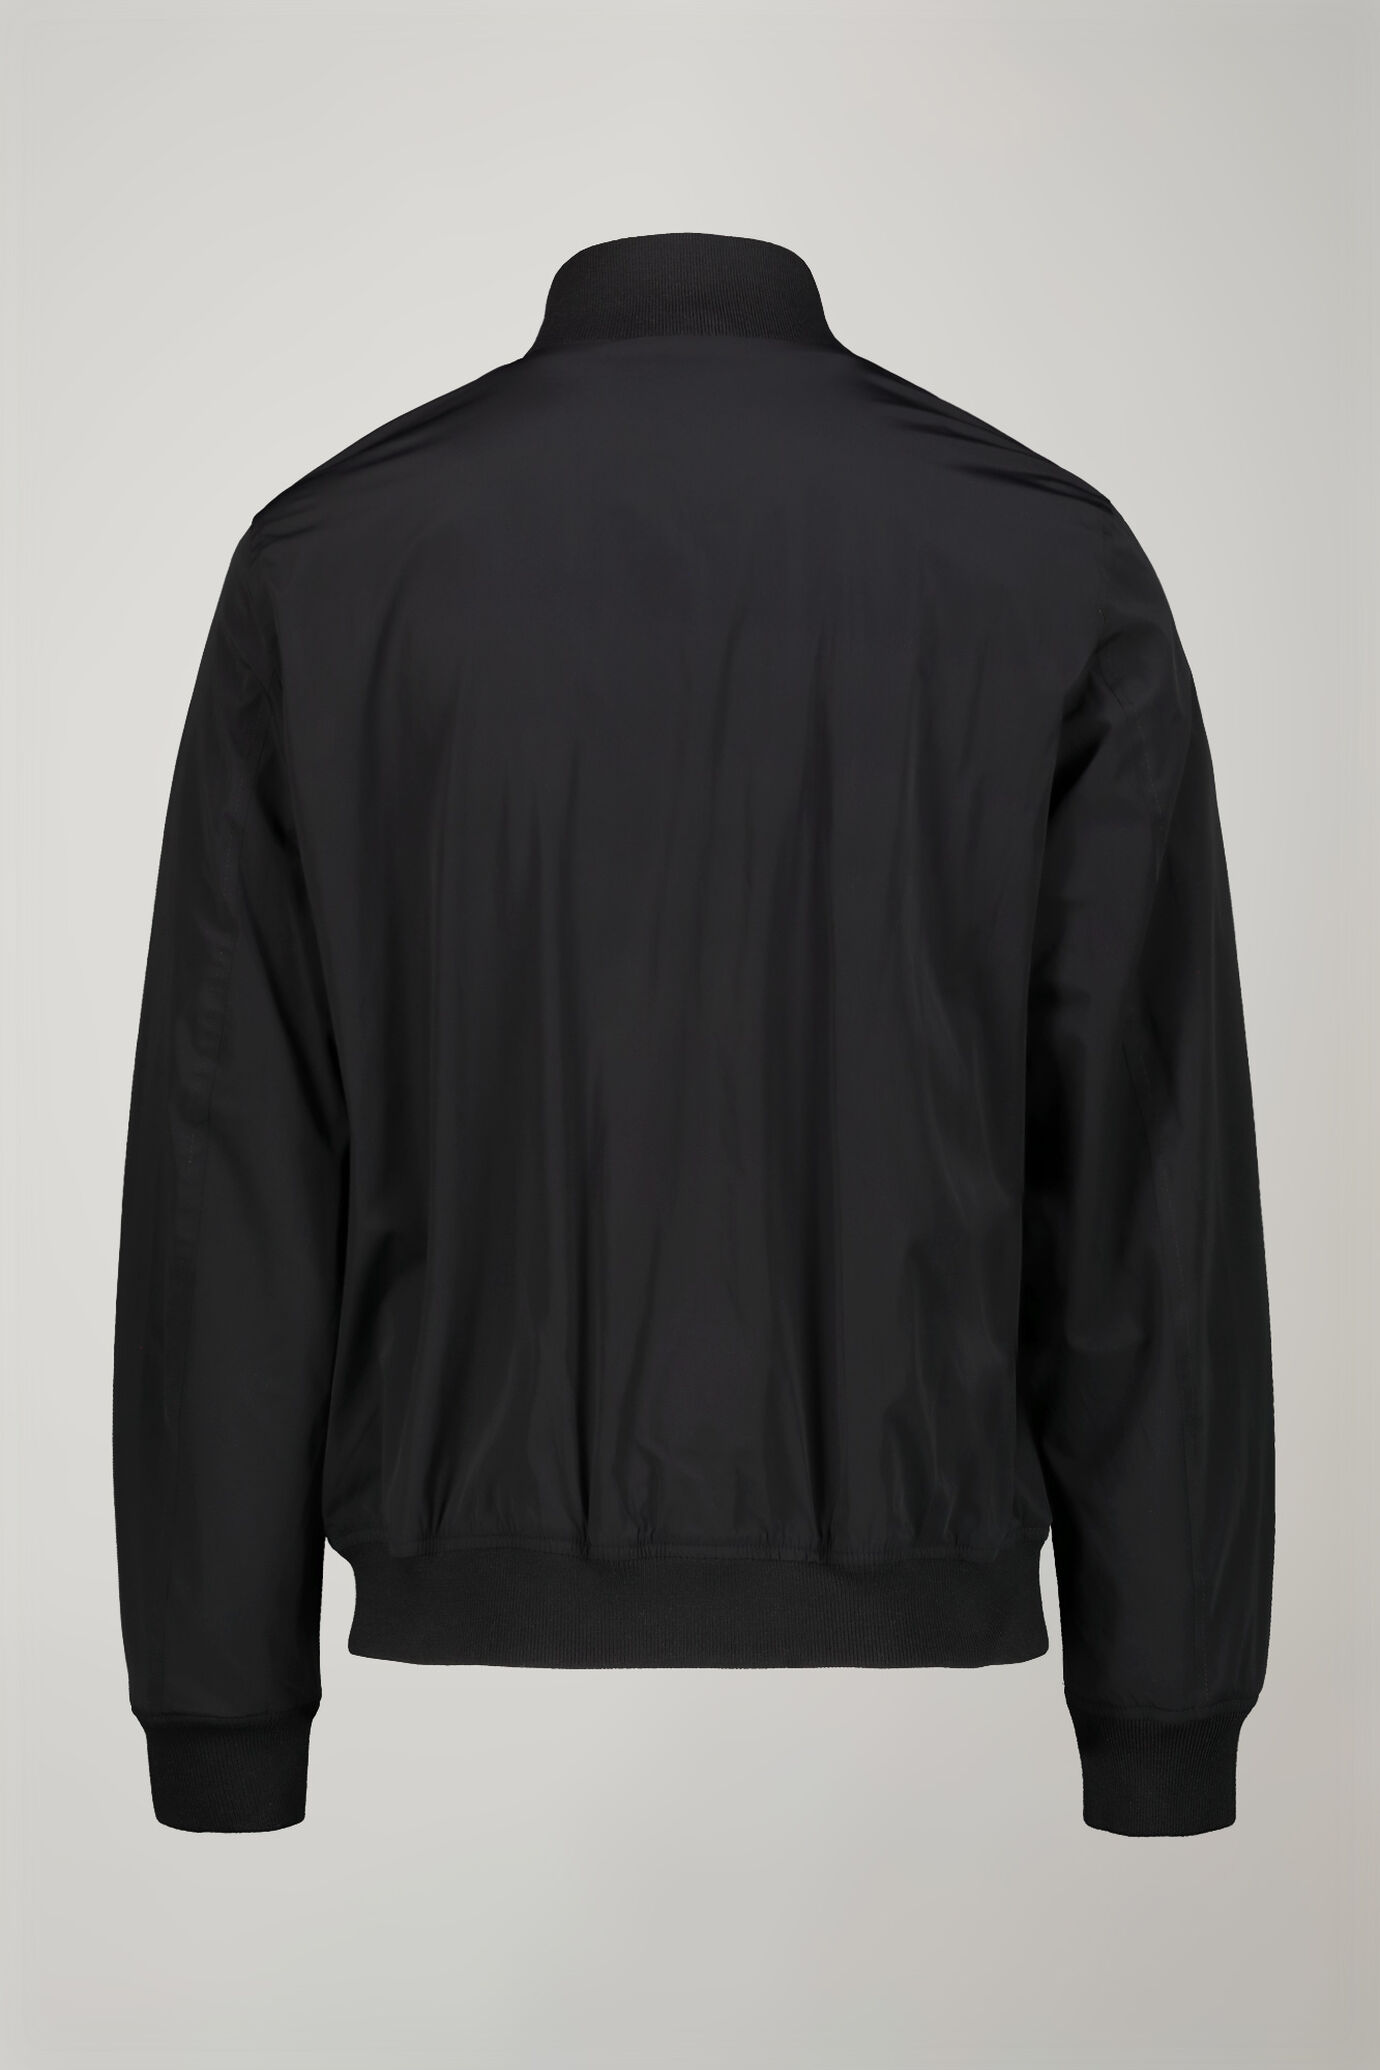 Men’s jacket lined comfort fit image number 7